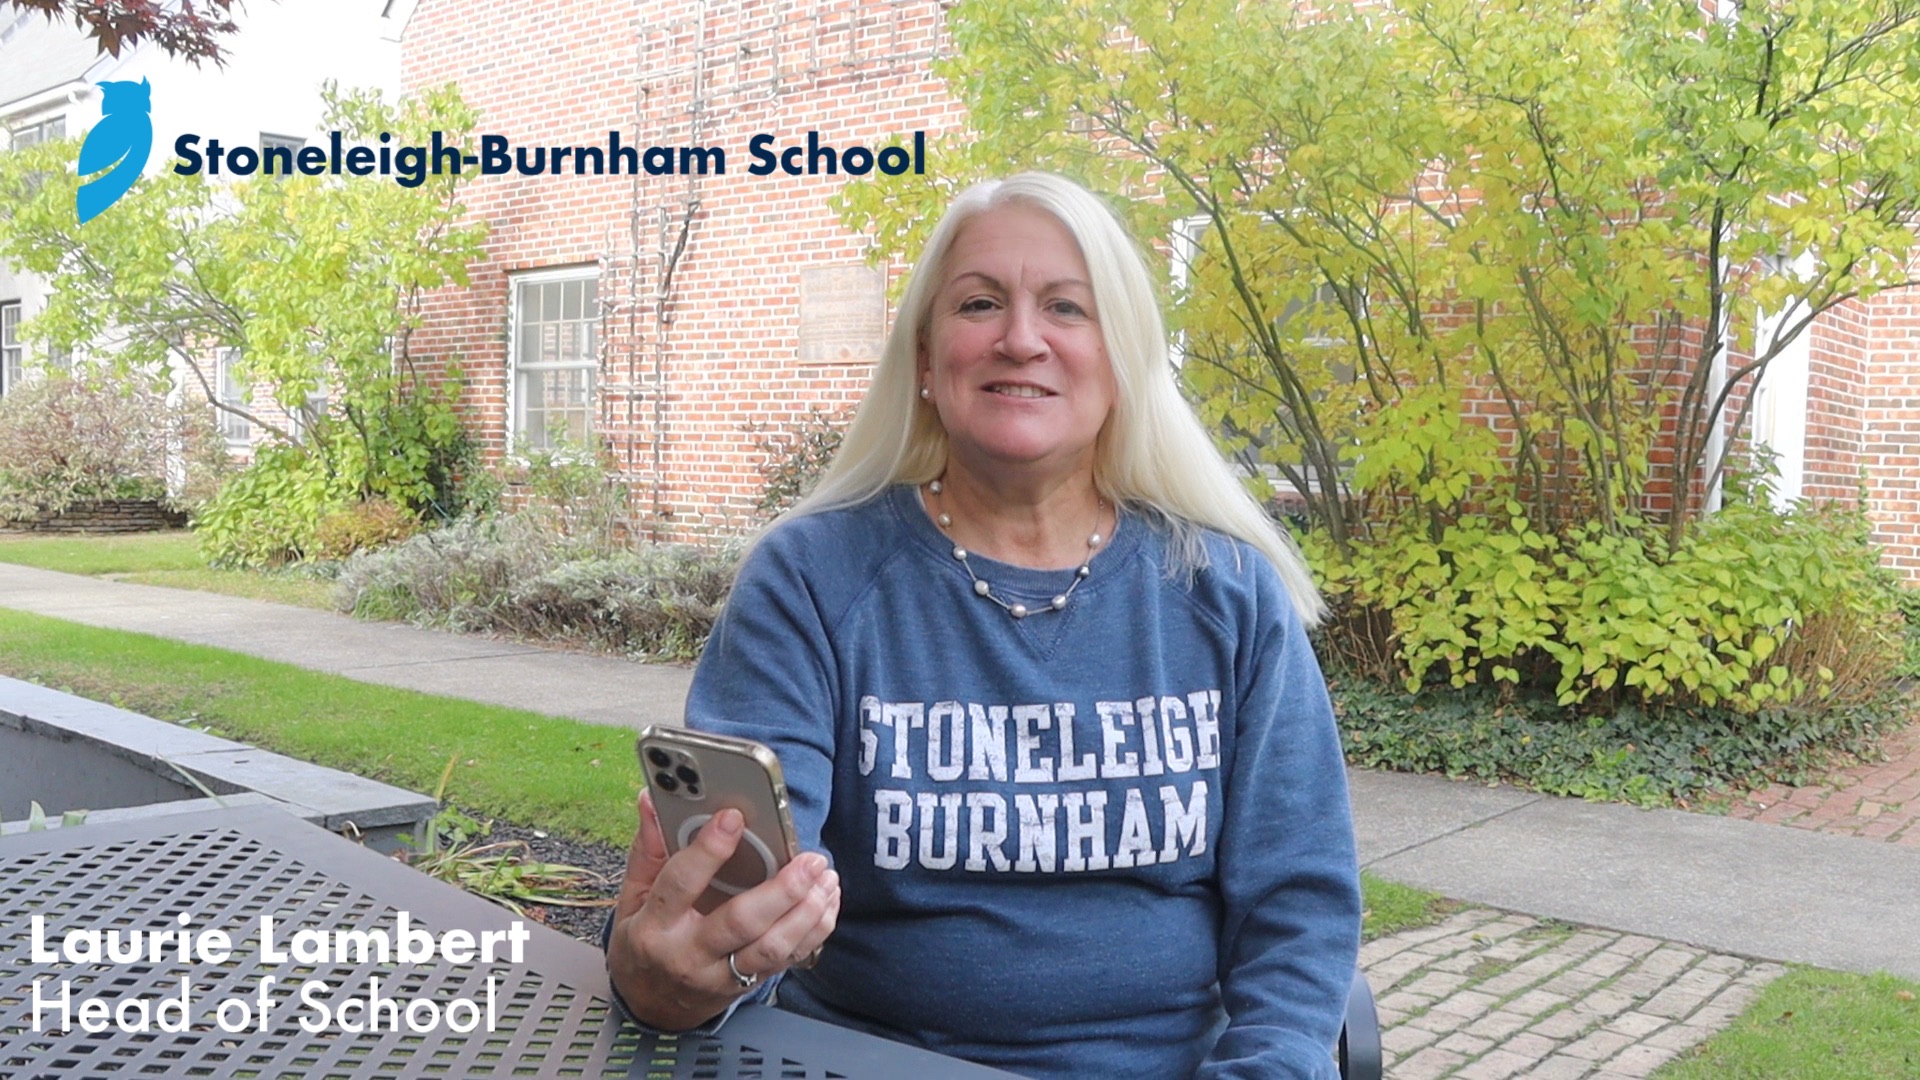 Boston.com Article Features Stoneleigh-Burnham School